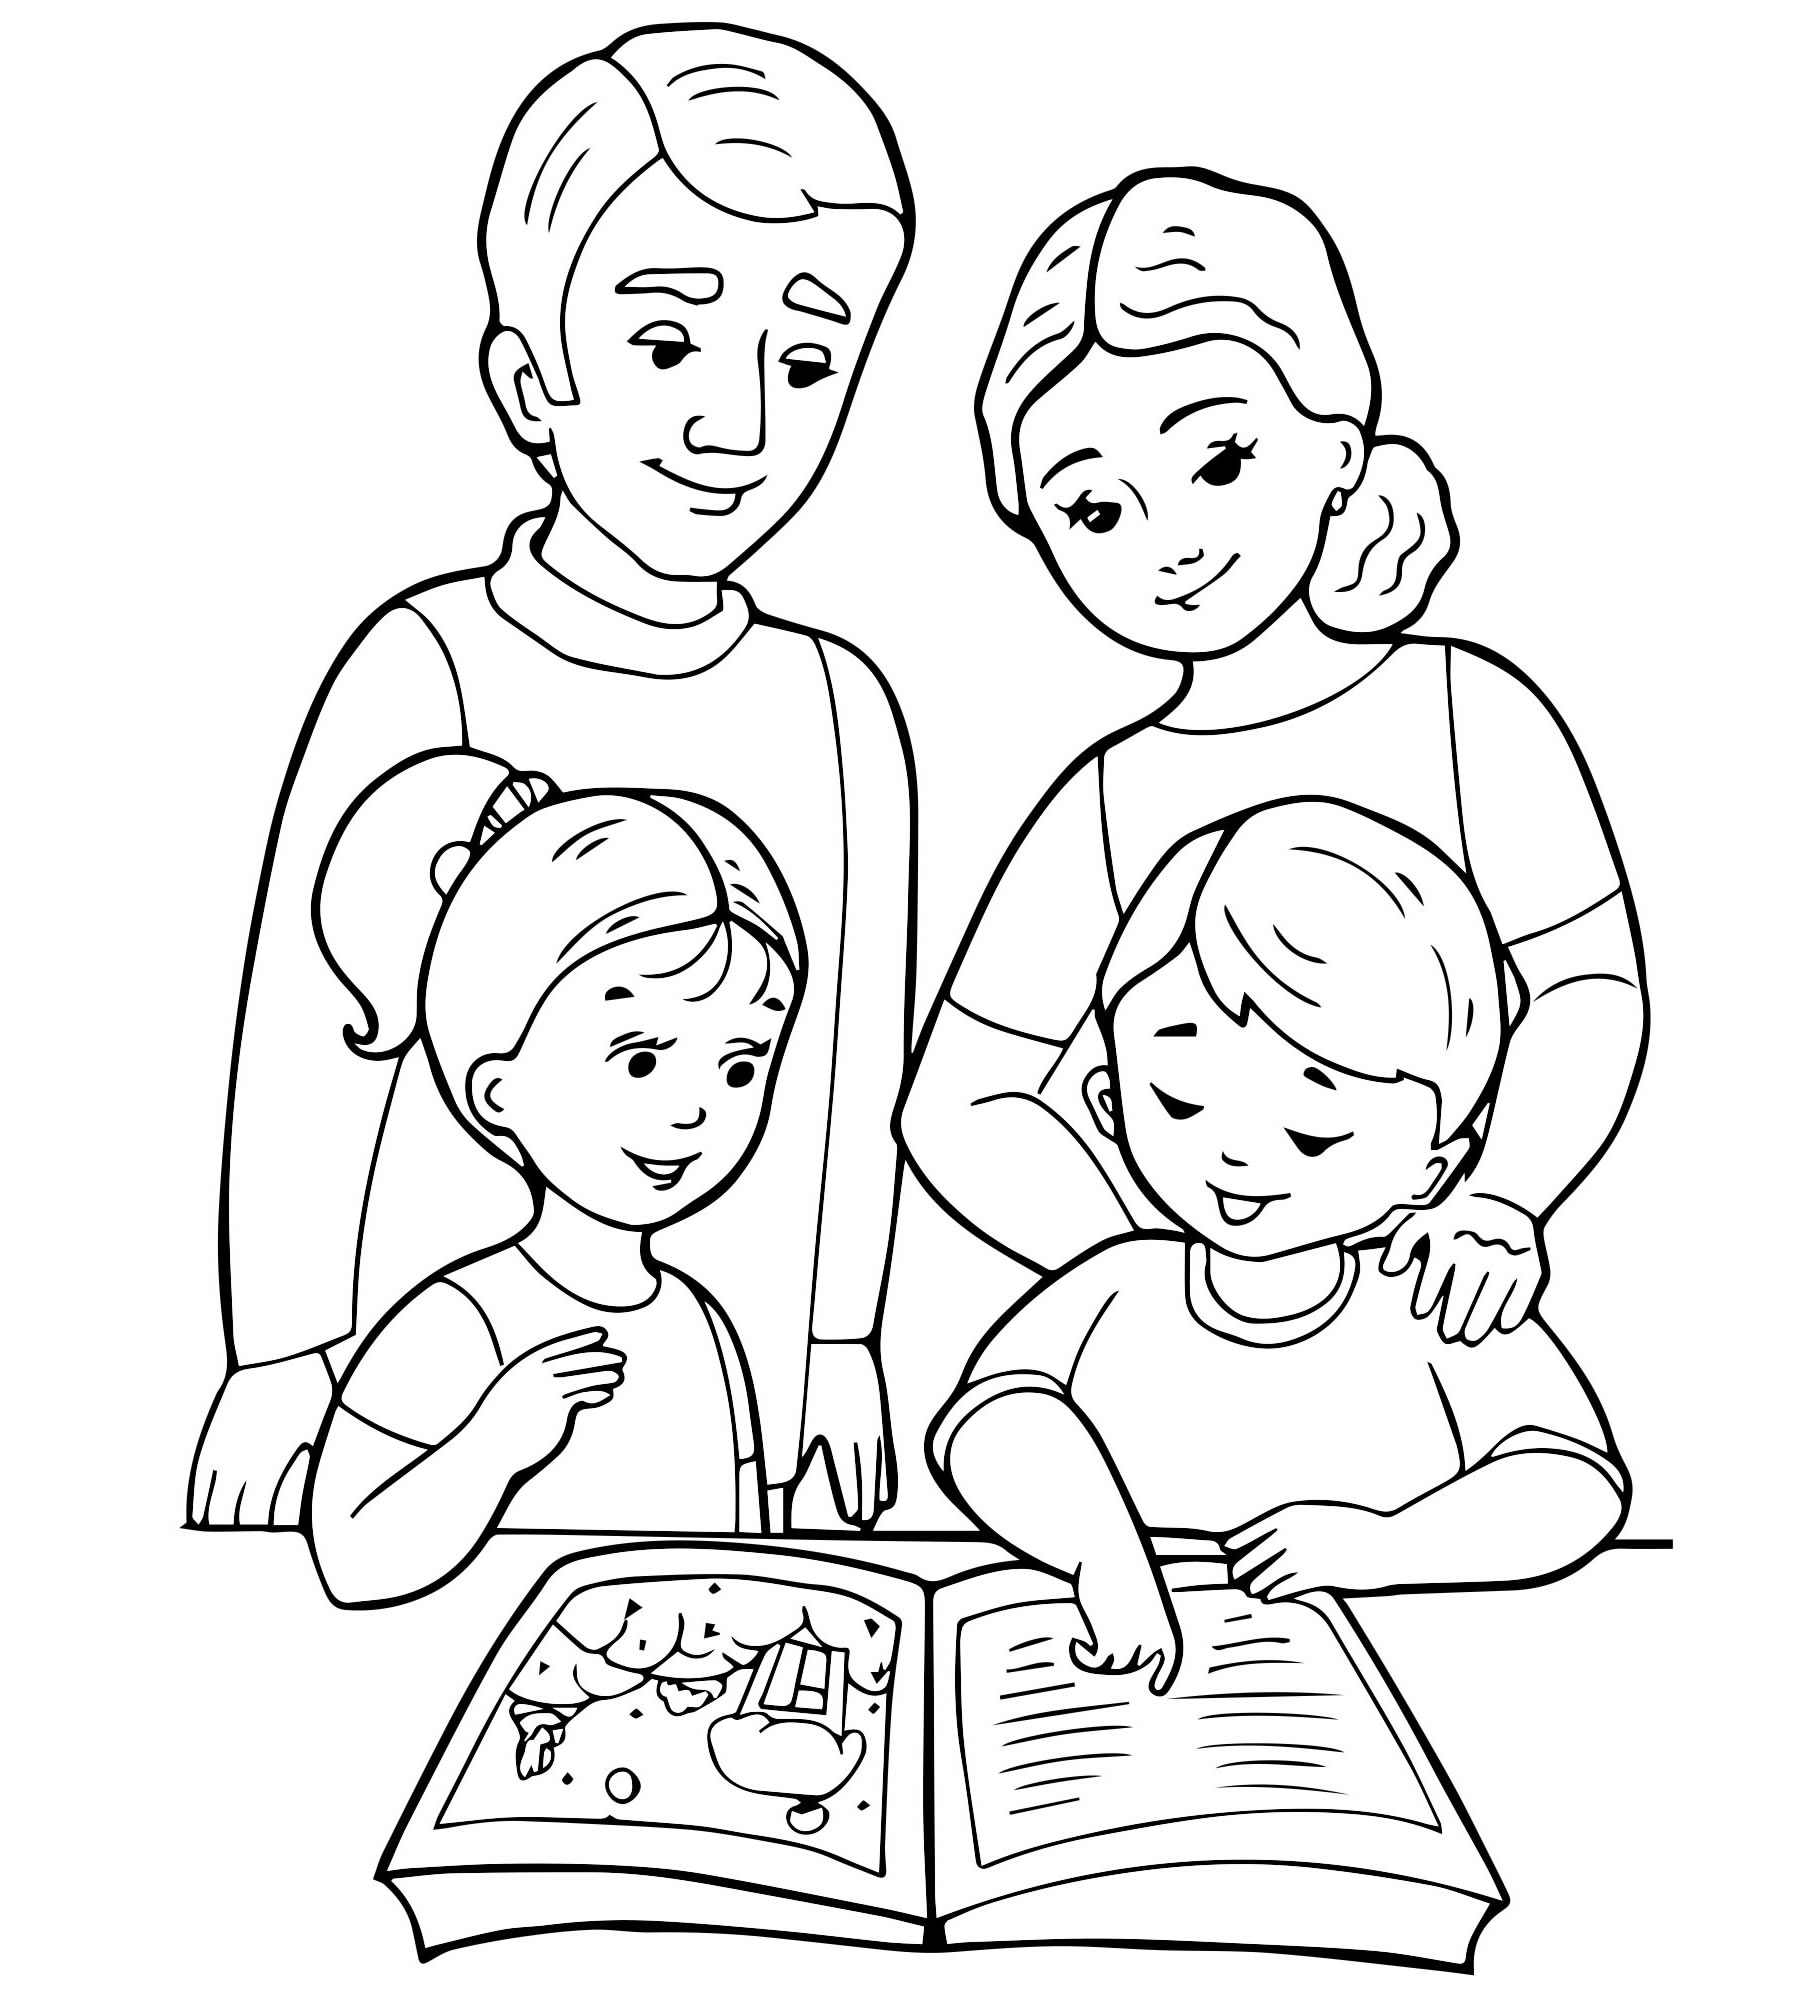 Читаем детские рисунки семья